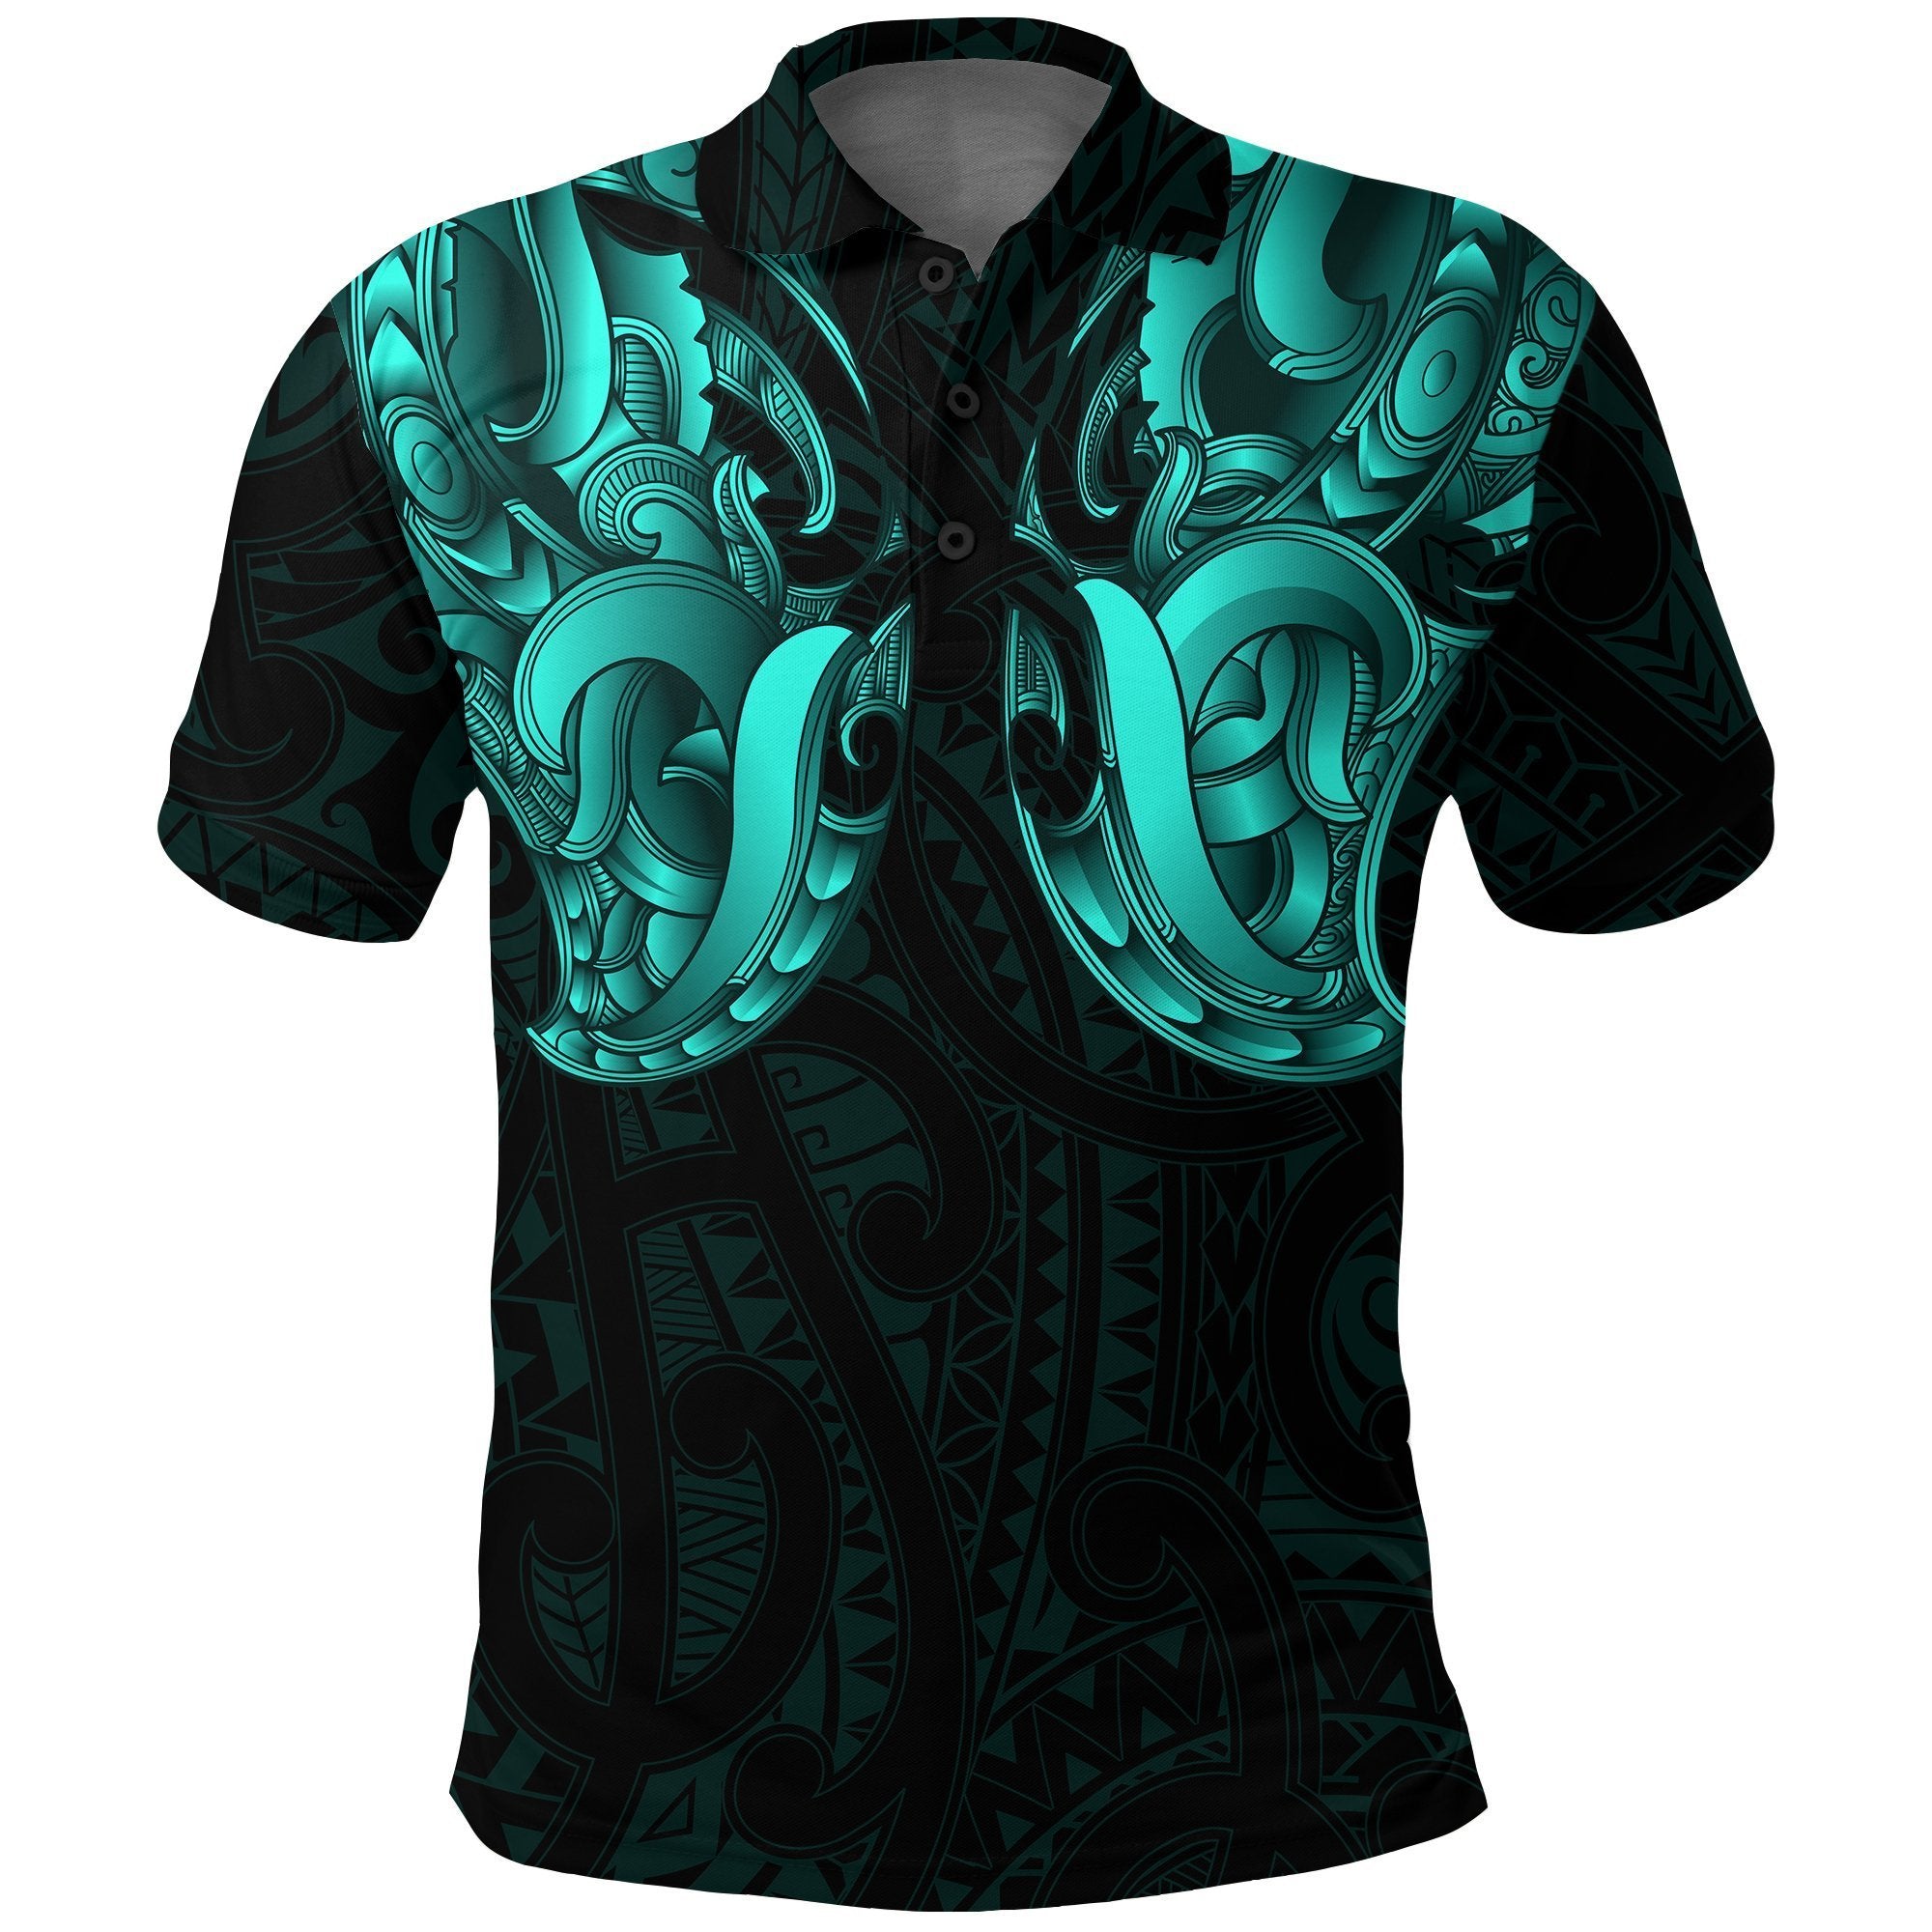 Maori Ta Moko Polo Shirt New Zealand Turquoise Unisex Black - Polynesian Pride